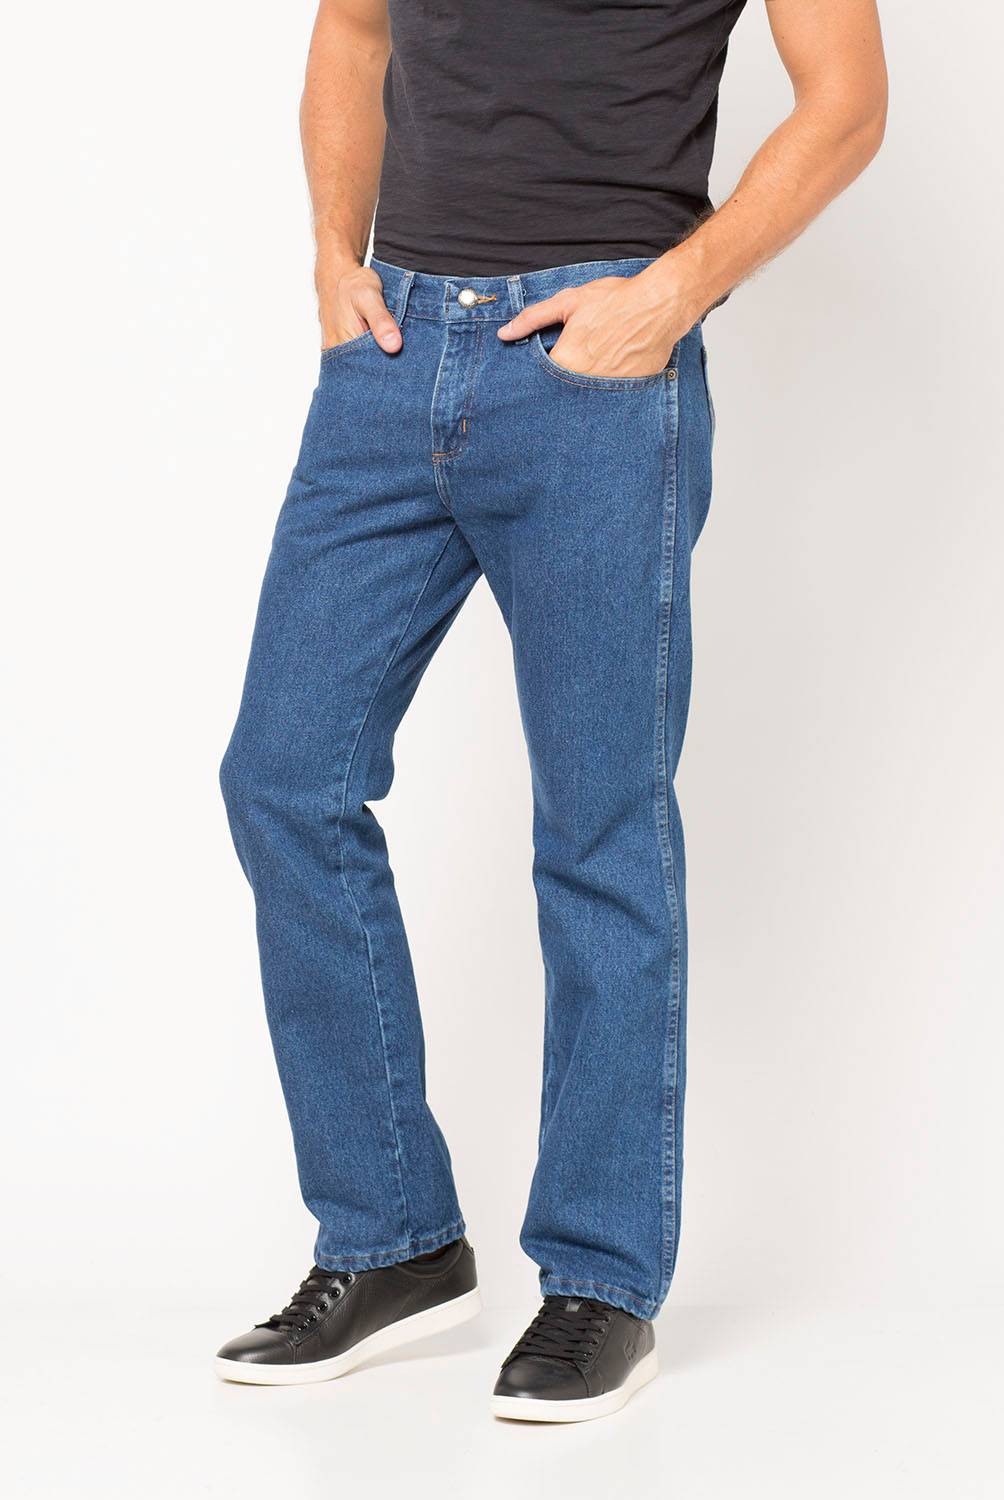 WRANGLER - Jeans Texas Regular Fit Hombre Wrangler